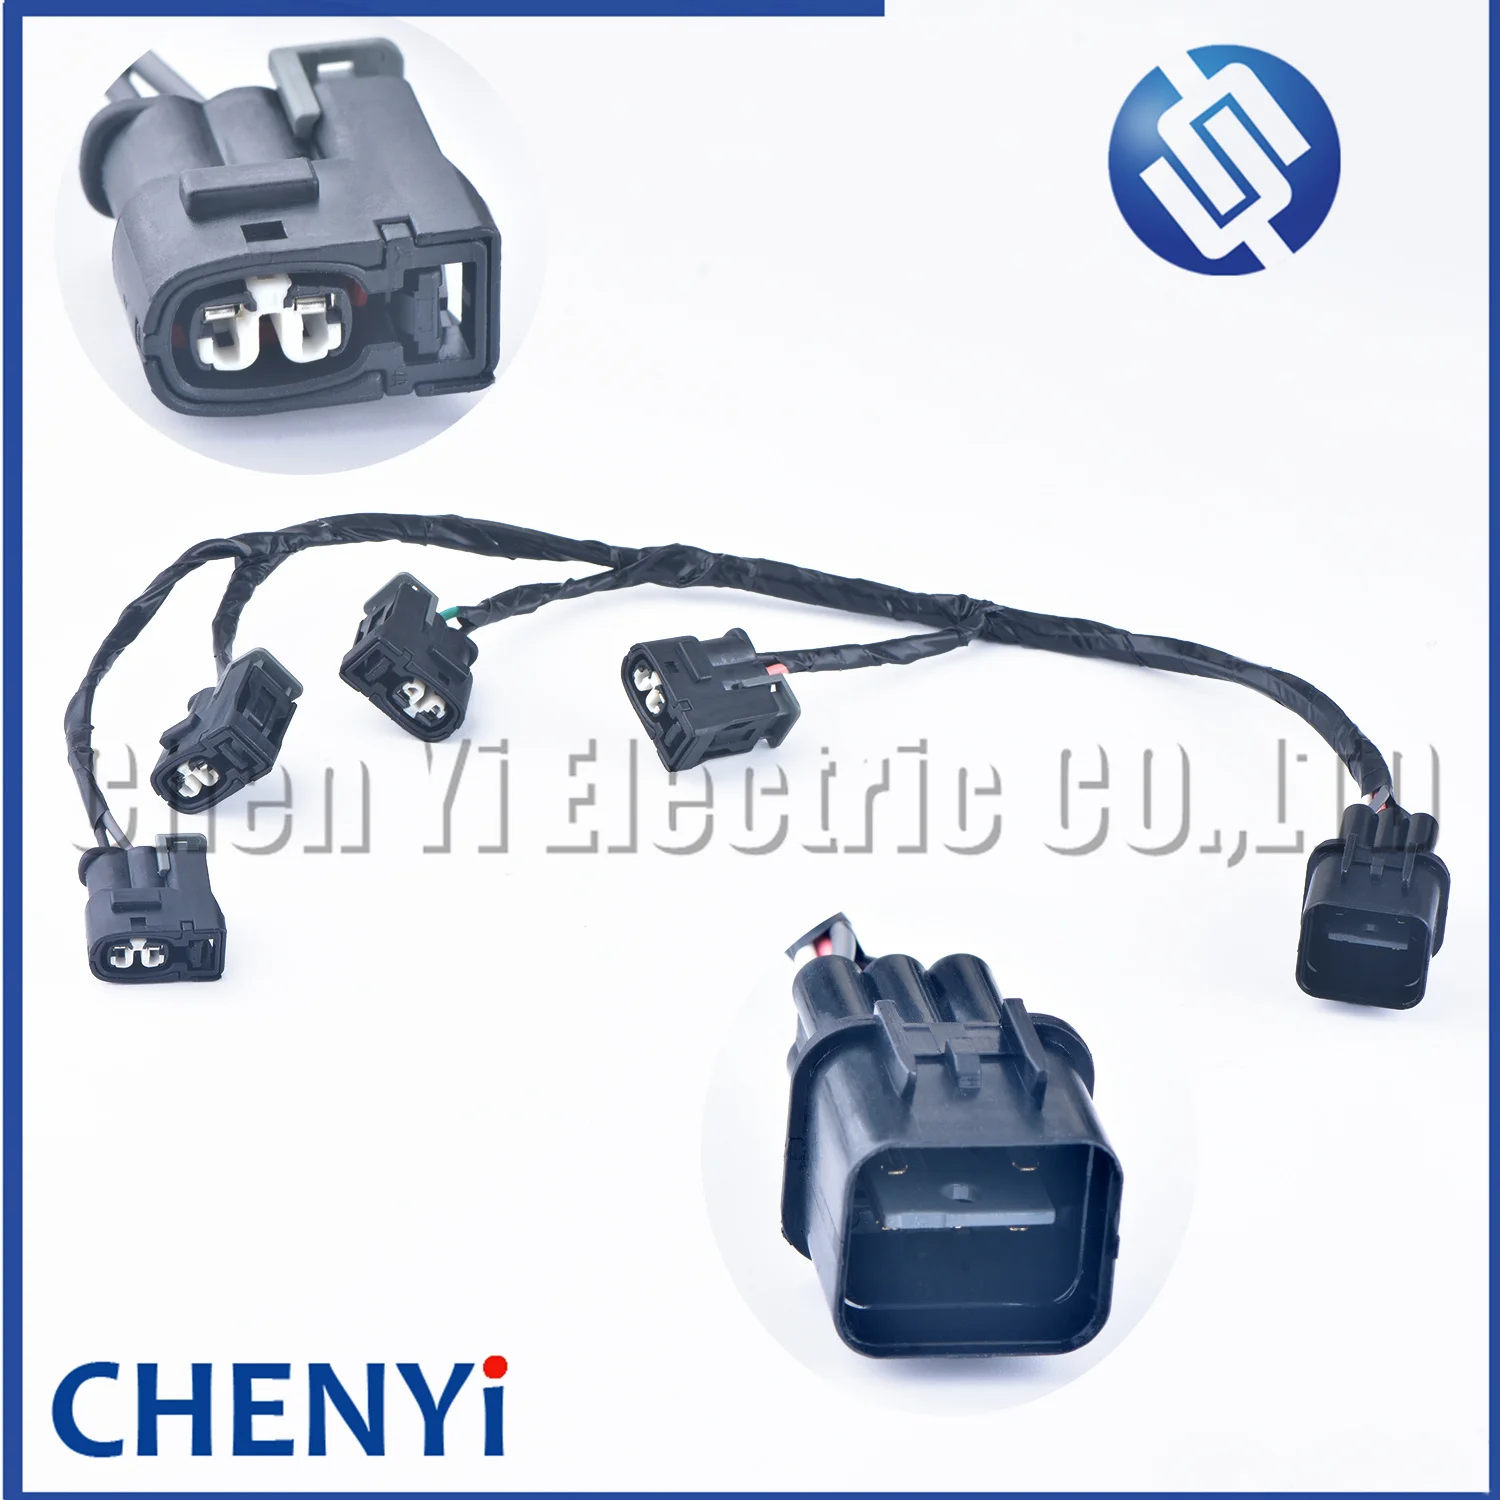 

Ignition Coil Wire Harness Plug and Play 27350-26620 For Hyundai Accent Kia Rio Rio5 1.6L 2006-2011 2735026620 27350 26620